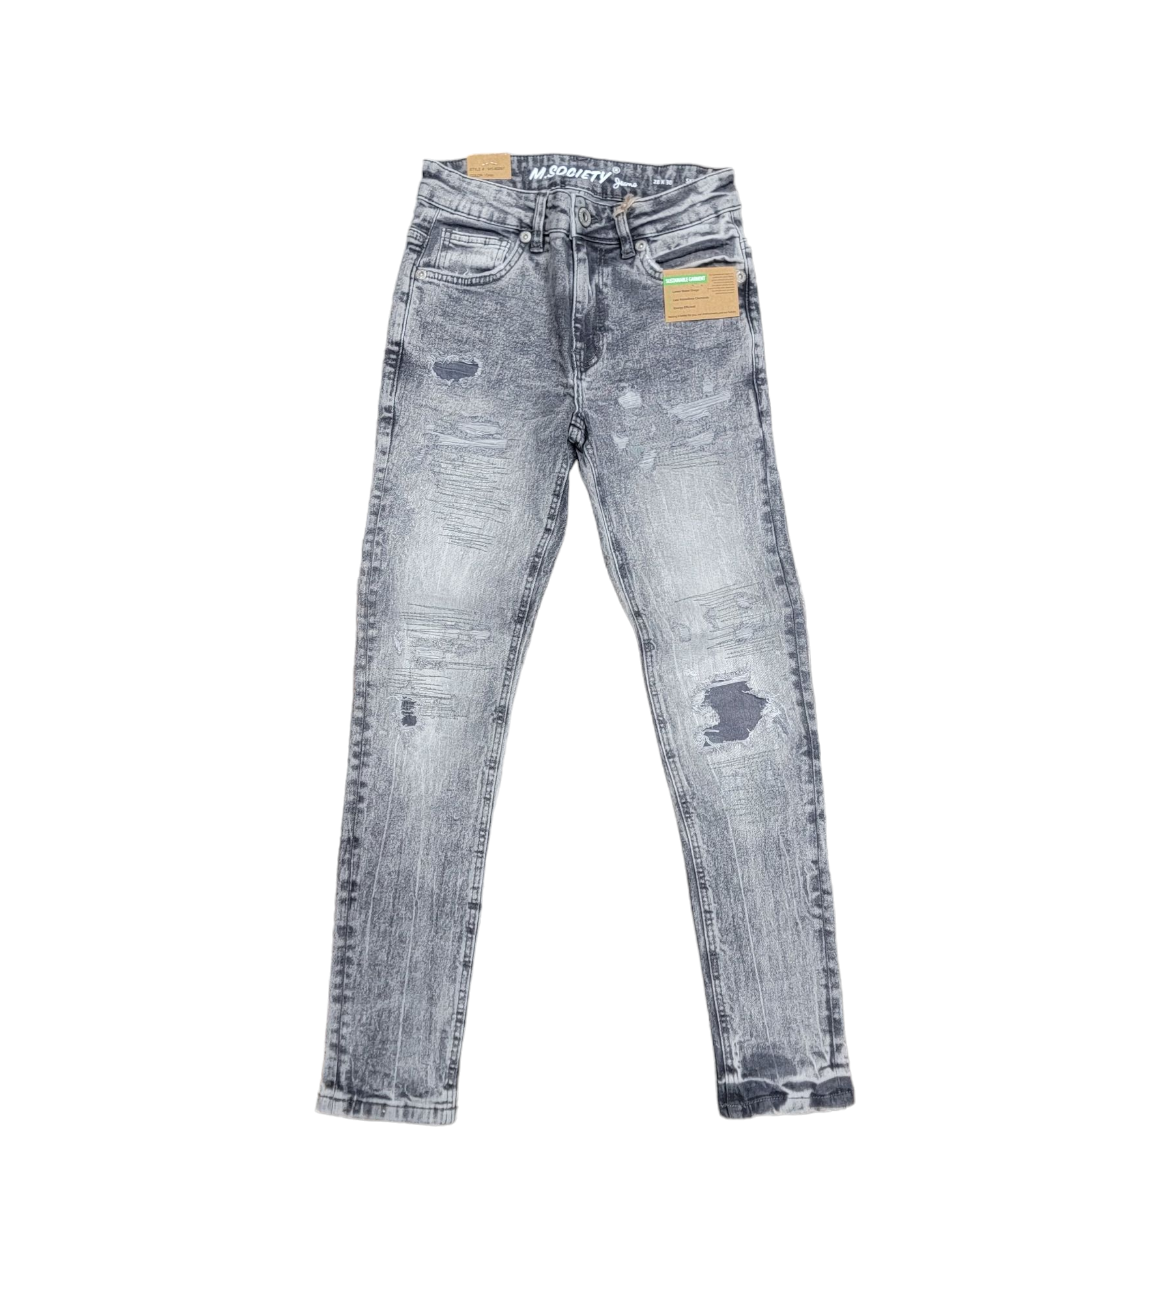 M. Society Men's Skinny Fit Jeans Grey 80297